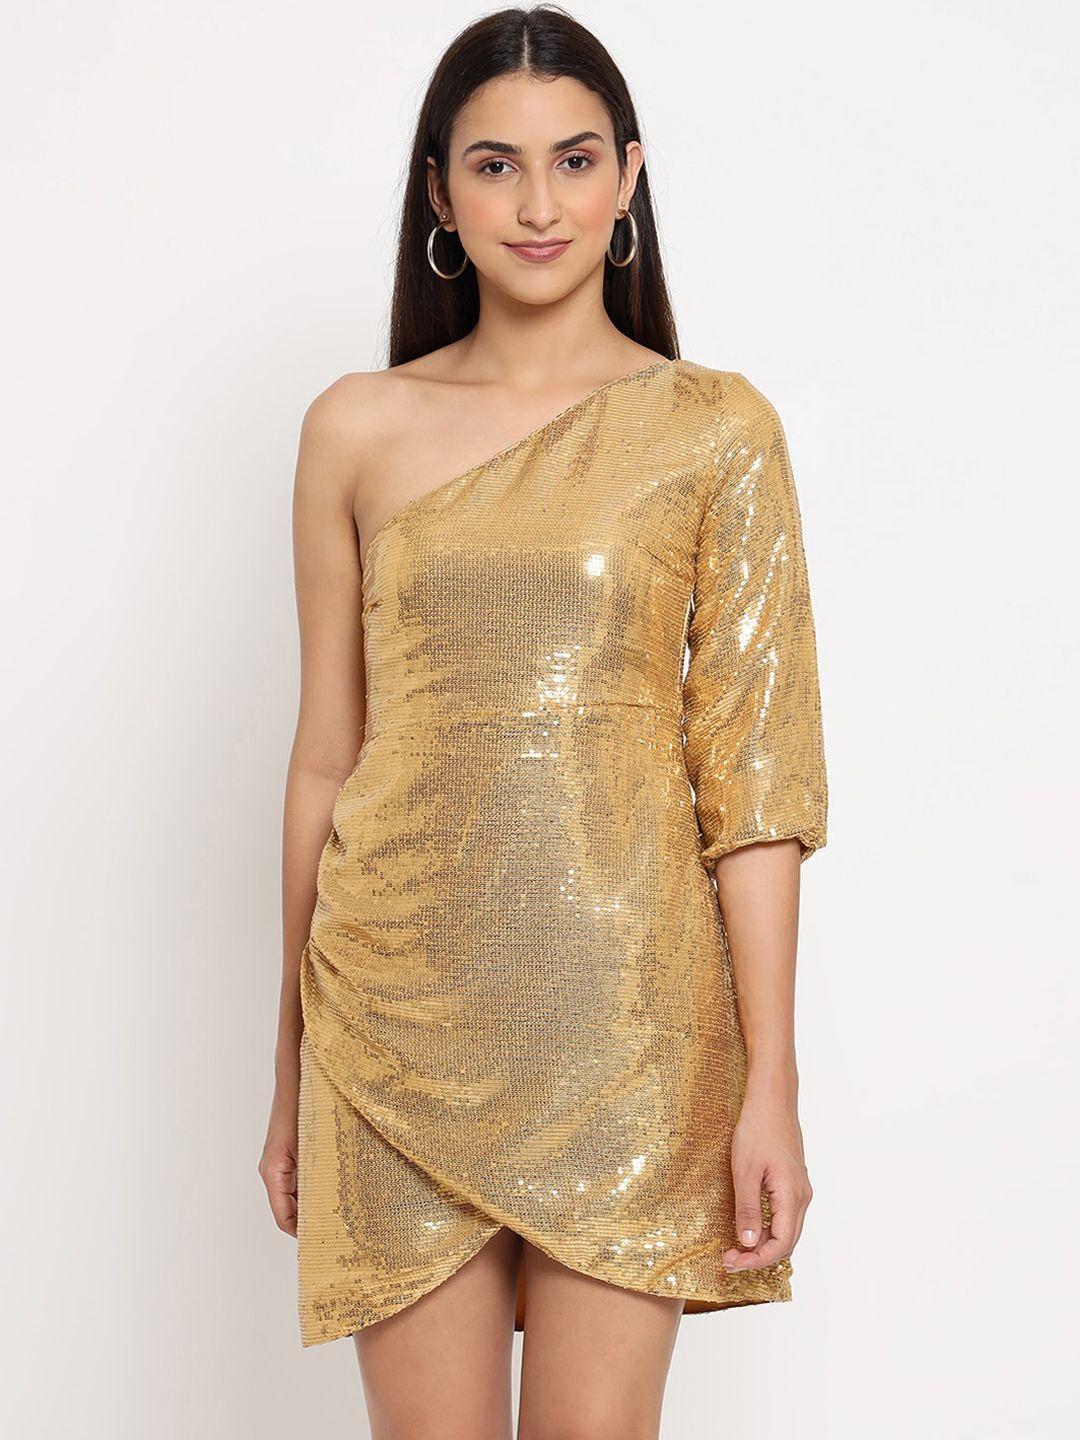 marc-louis-gold-toned-embellished-one-shoulder-georgette-sheath-dress